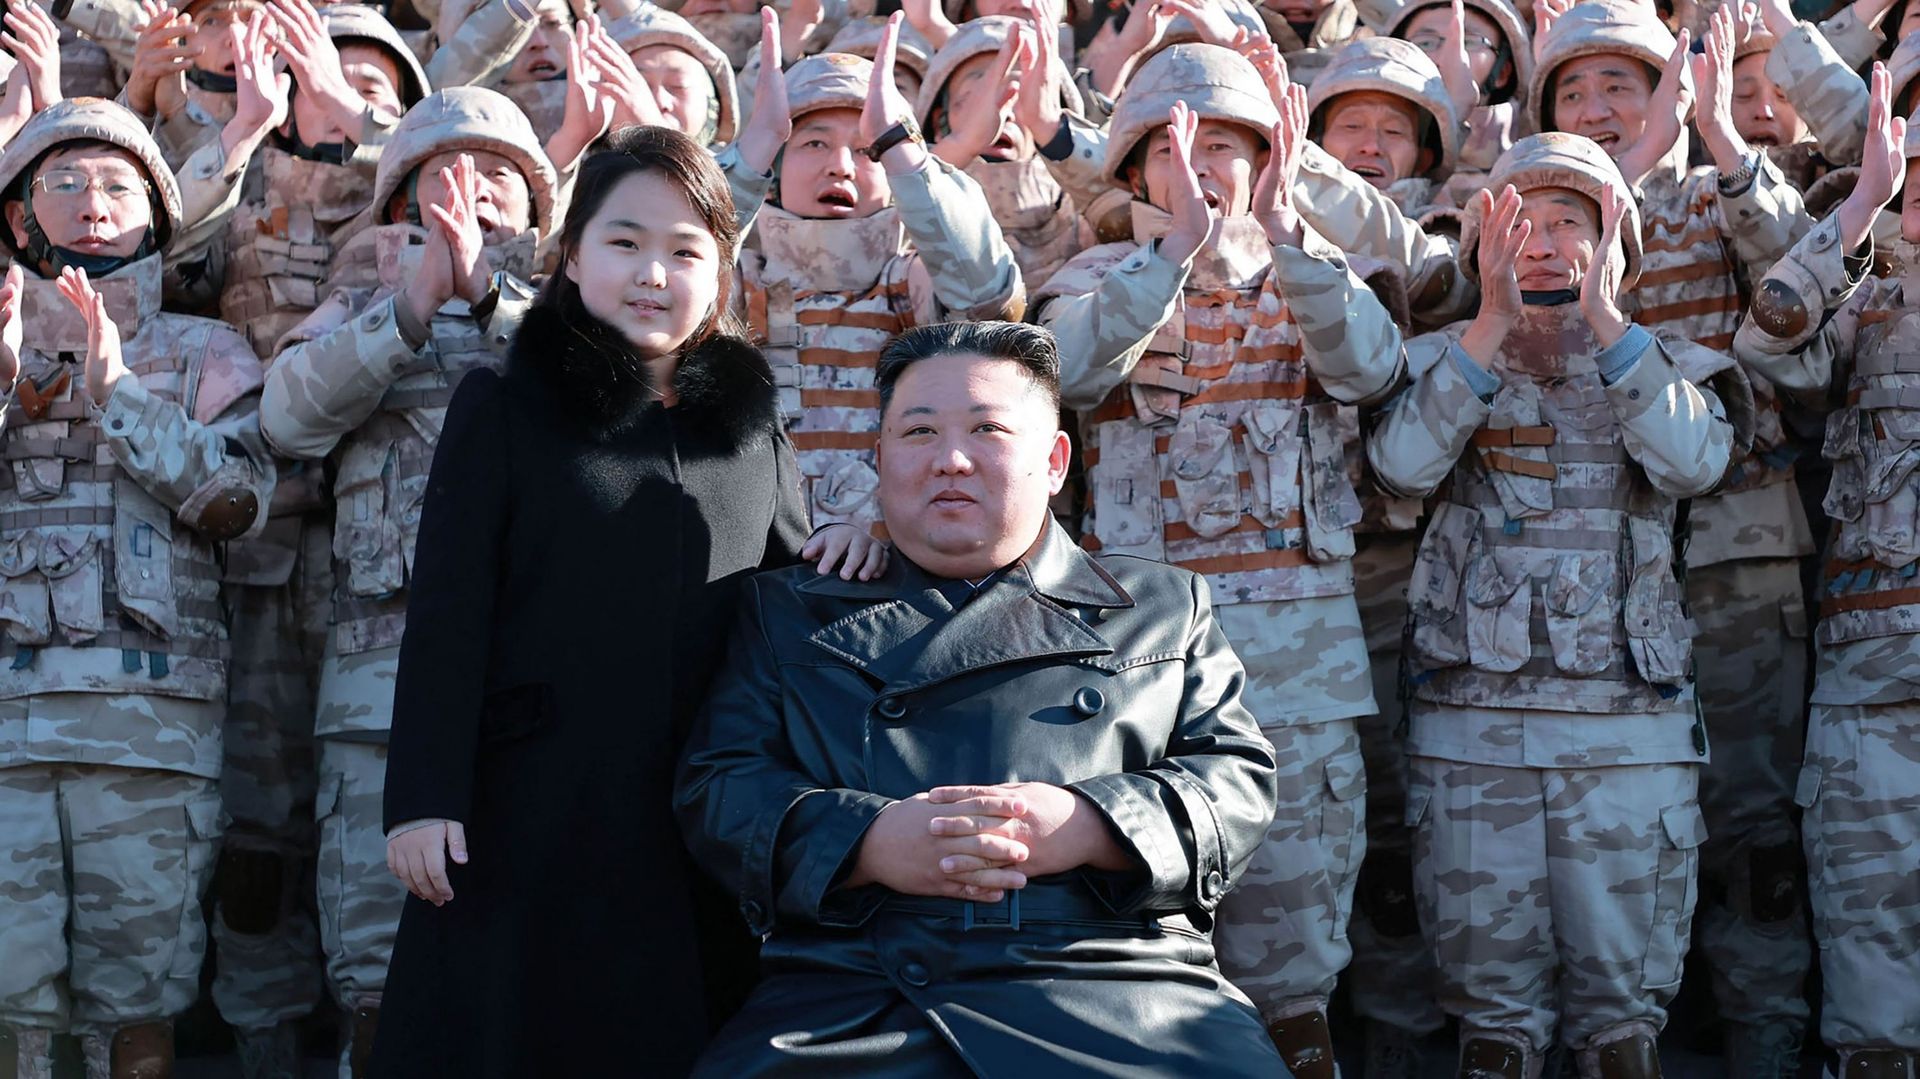 Les photos de dimanche montrent l’adolescente, qui serait le deuxième enfant de Kim Jong Un et se prénommerait Ju Ae, habillée d’un manteau noir.